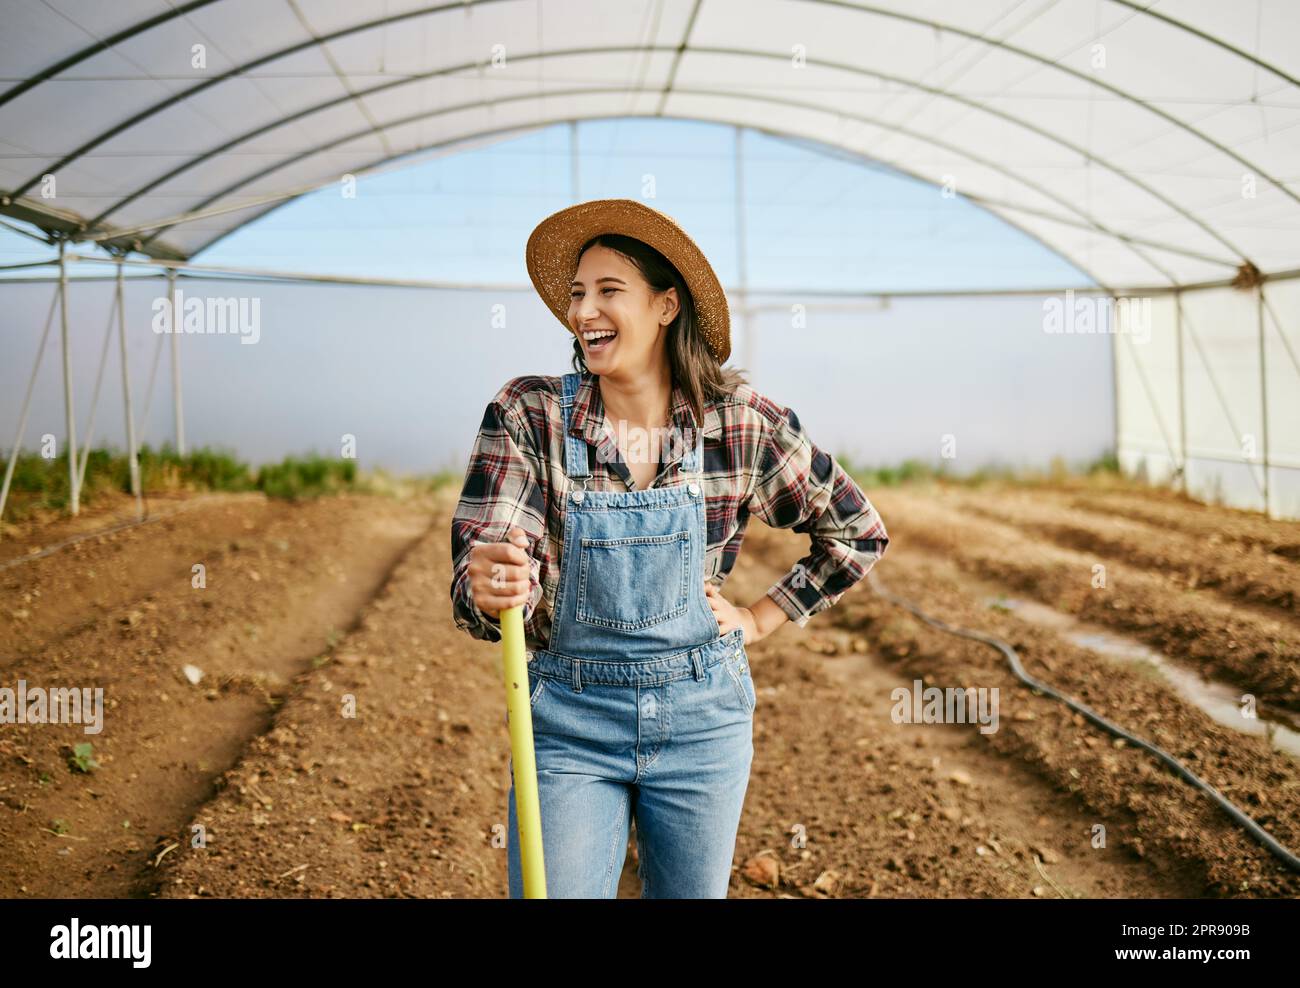 En regardant l'aboutissement de son travail acharné, une jeune agricultrice travaillant dans sa serre. Banque D'Images